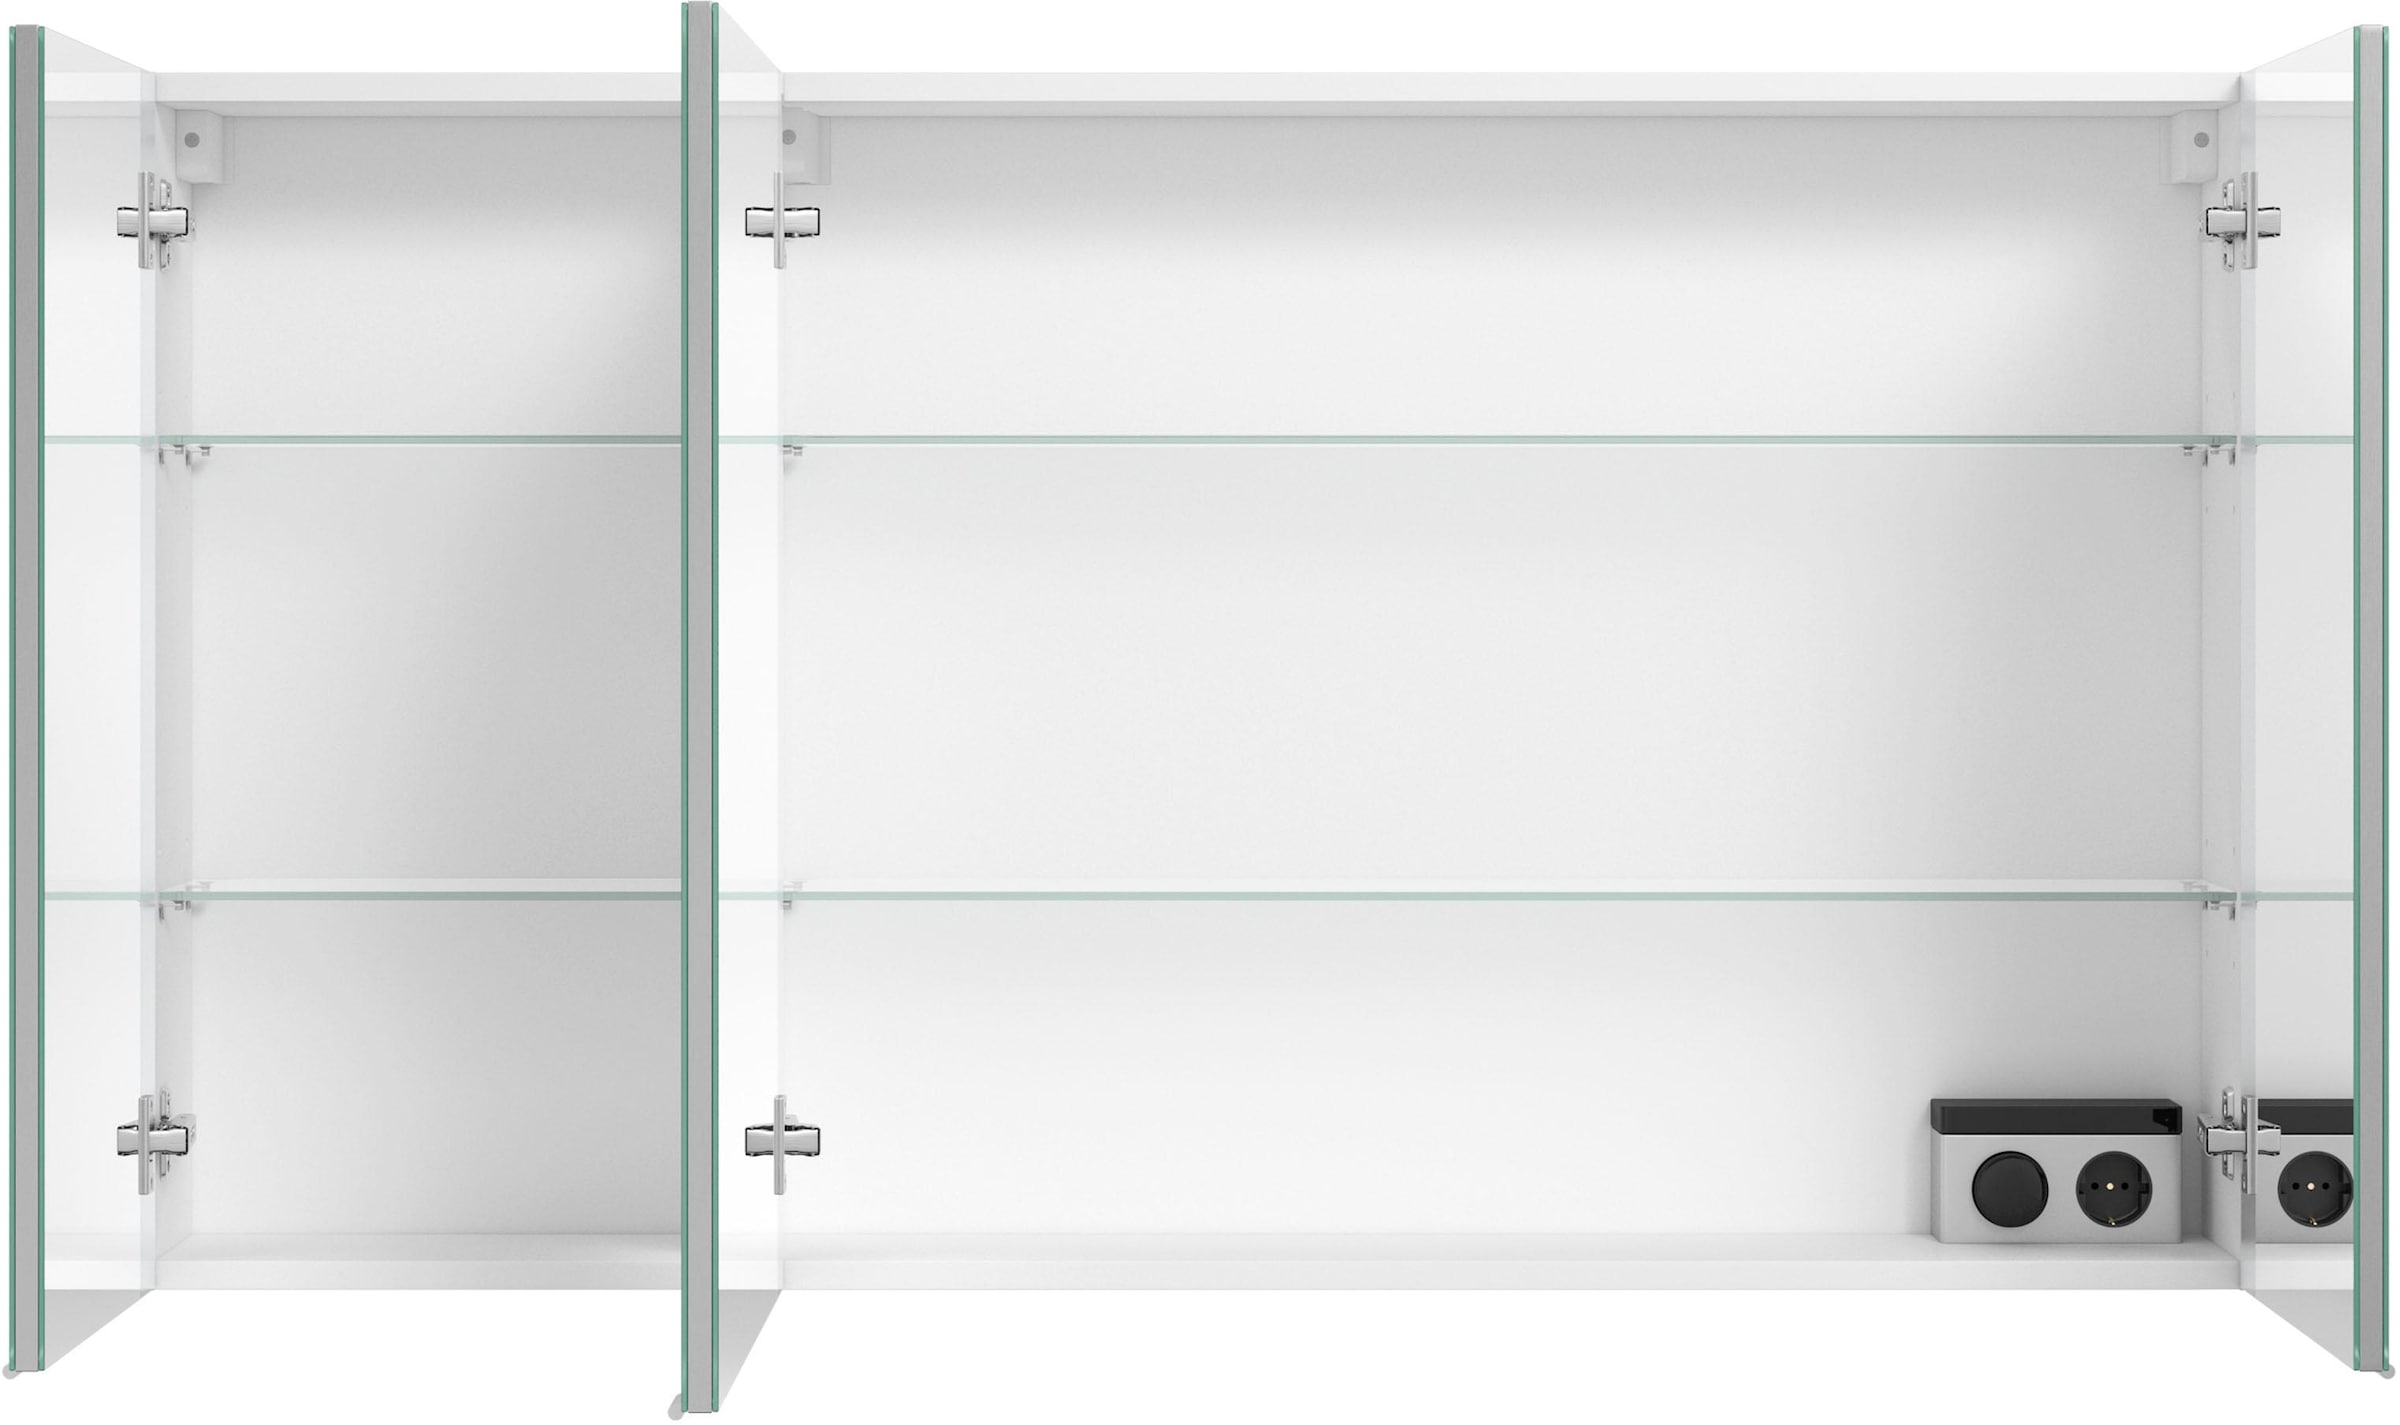 MARLIN Spiegelschrank »3980«, mit doppelseitig verspiegelten Türen,  vormontiert kaufen bei OTTO